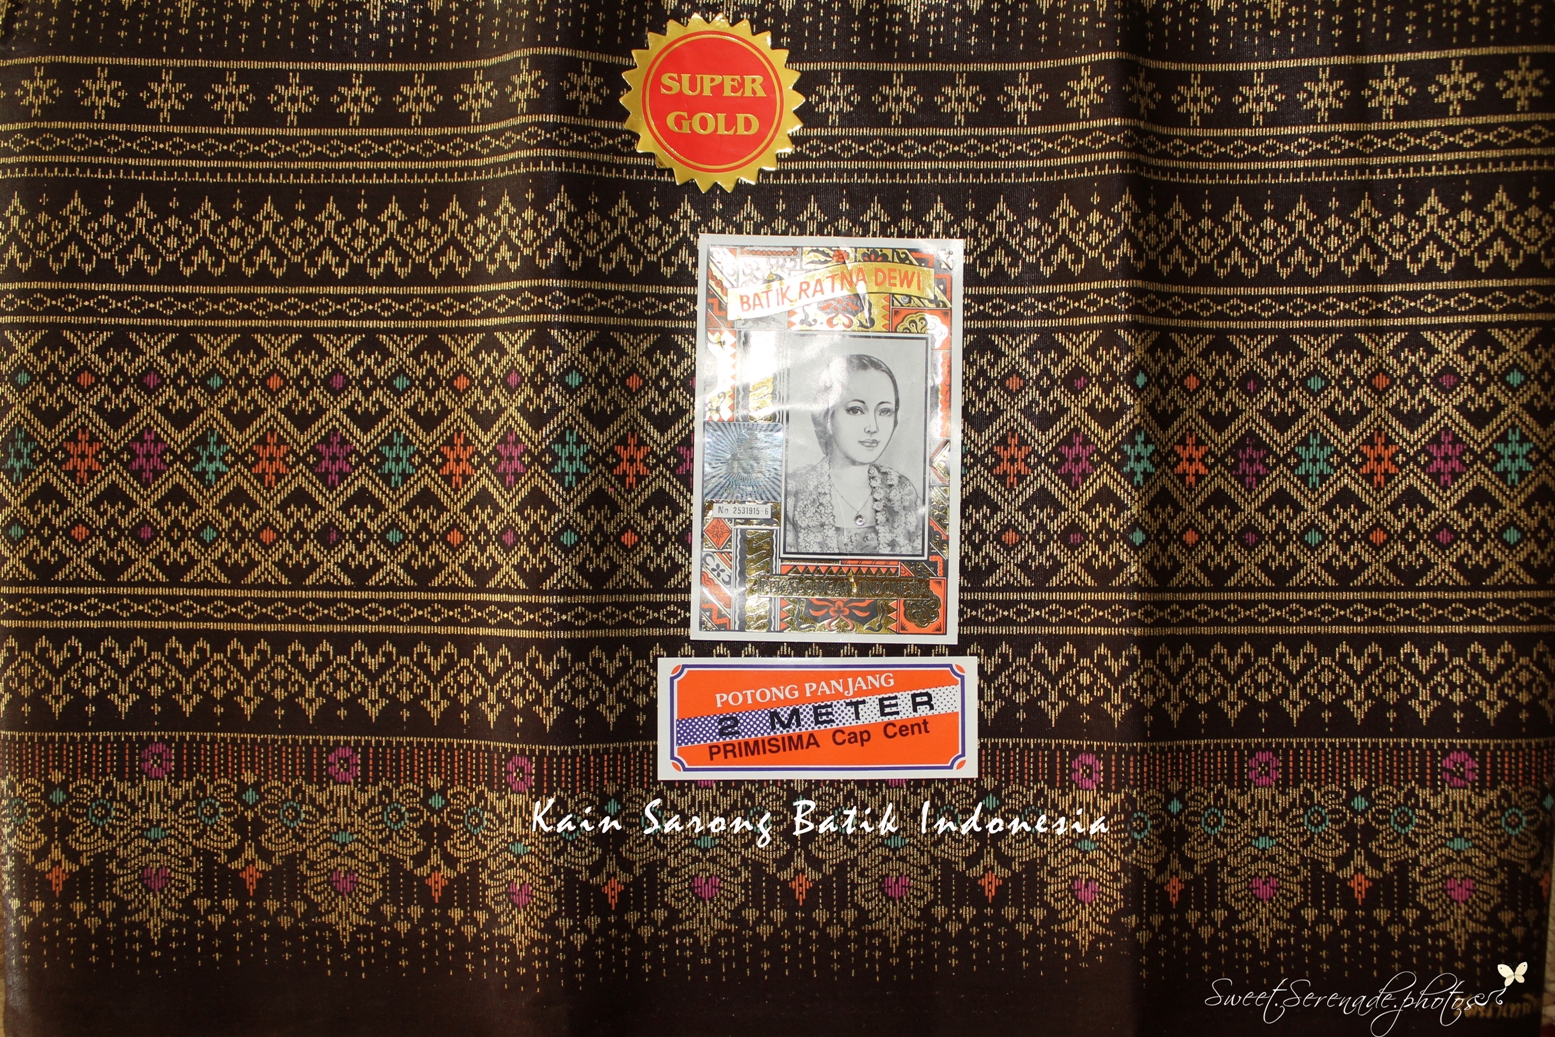 Perfumes and Art: Batik Ratna Dewi Indonesia